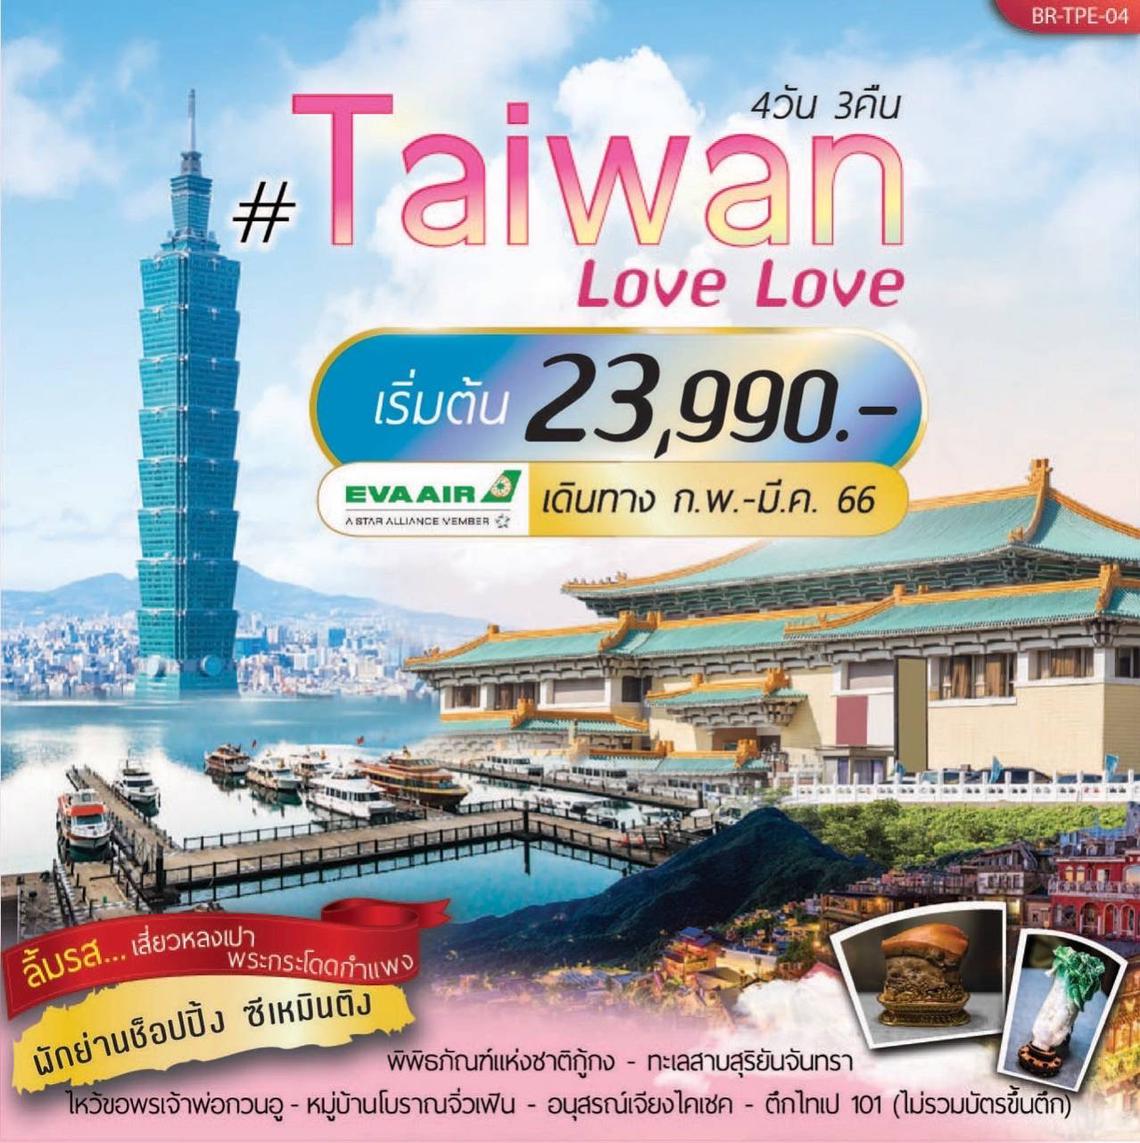 Taiwan Love Love 4D3N By BR